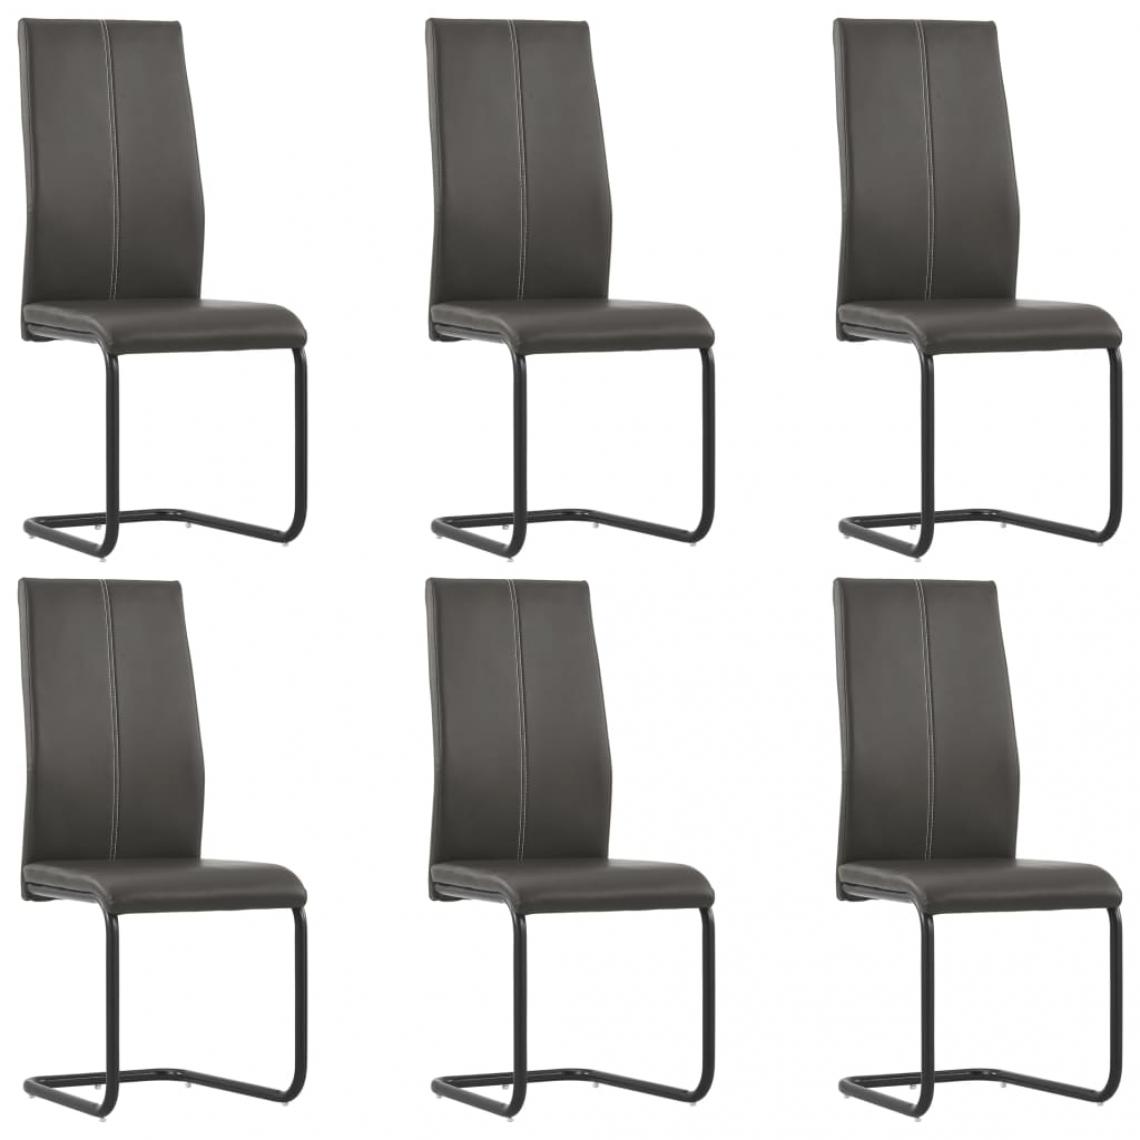 Decoshop26 - Lot de 6 chaises de salle à manger cuisine cantilever design moderne similicuir marron CDS022306 - Chaises